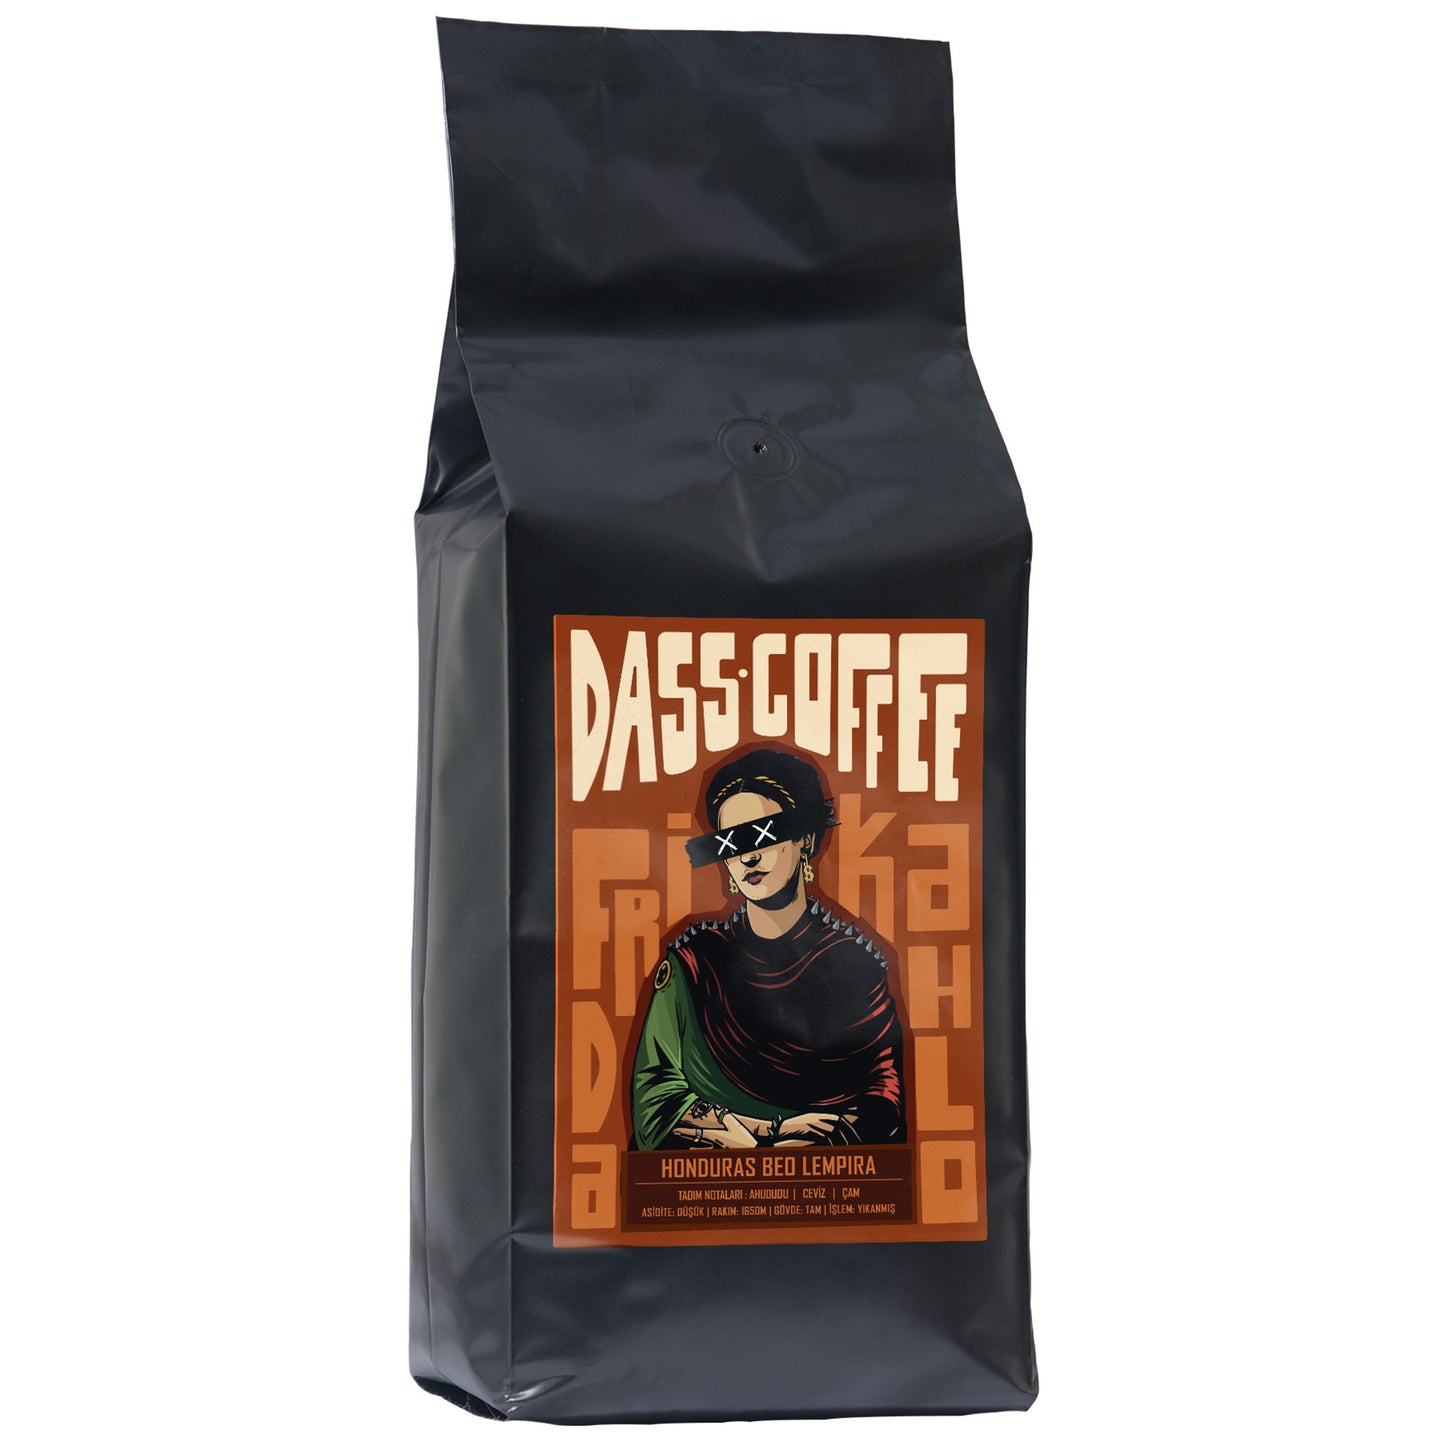 
                  
                    Dass Coffee Honduras Beo Lempira Yöresel Filtre Kahve - 1kg
                  
                